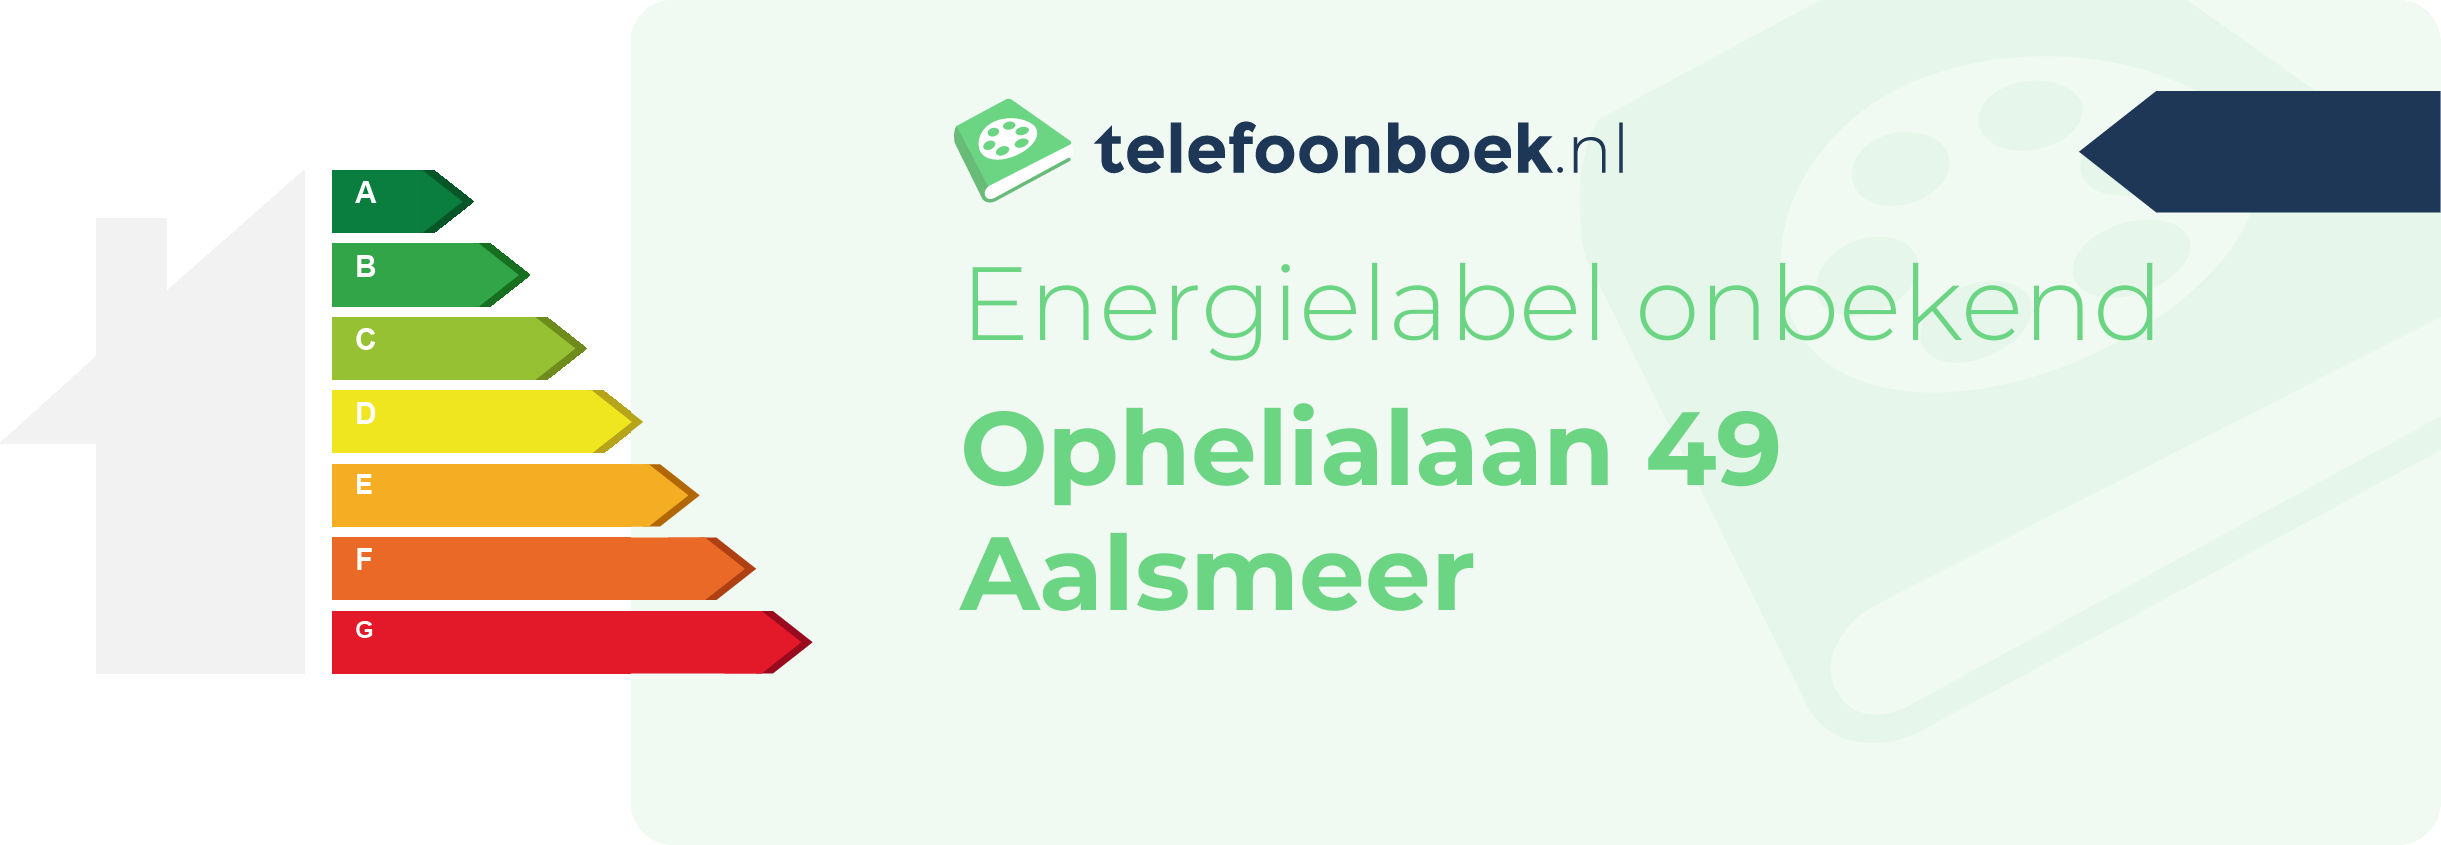 Energielabel Ophelialaan 49 Aalsmeer